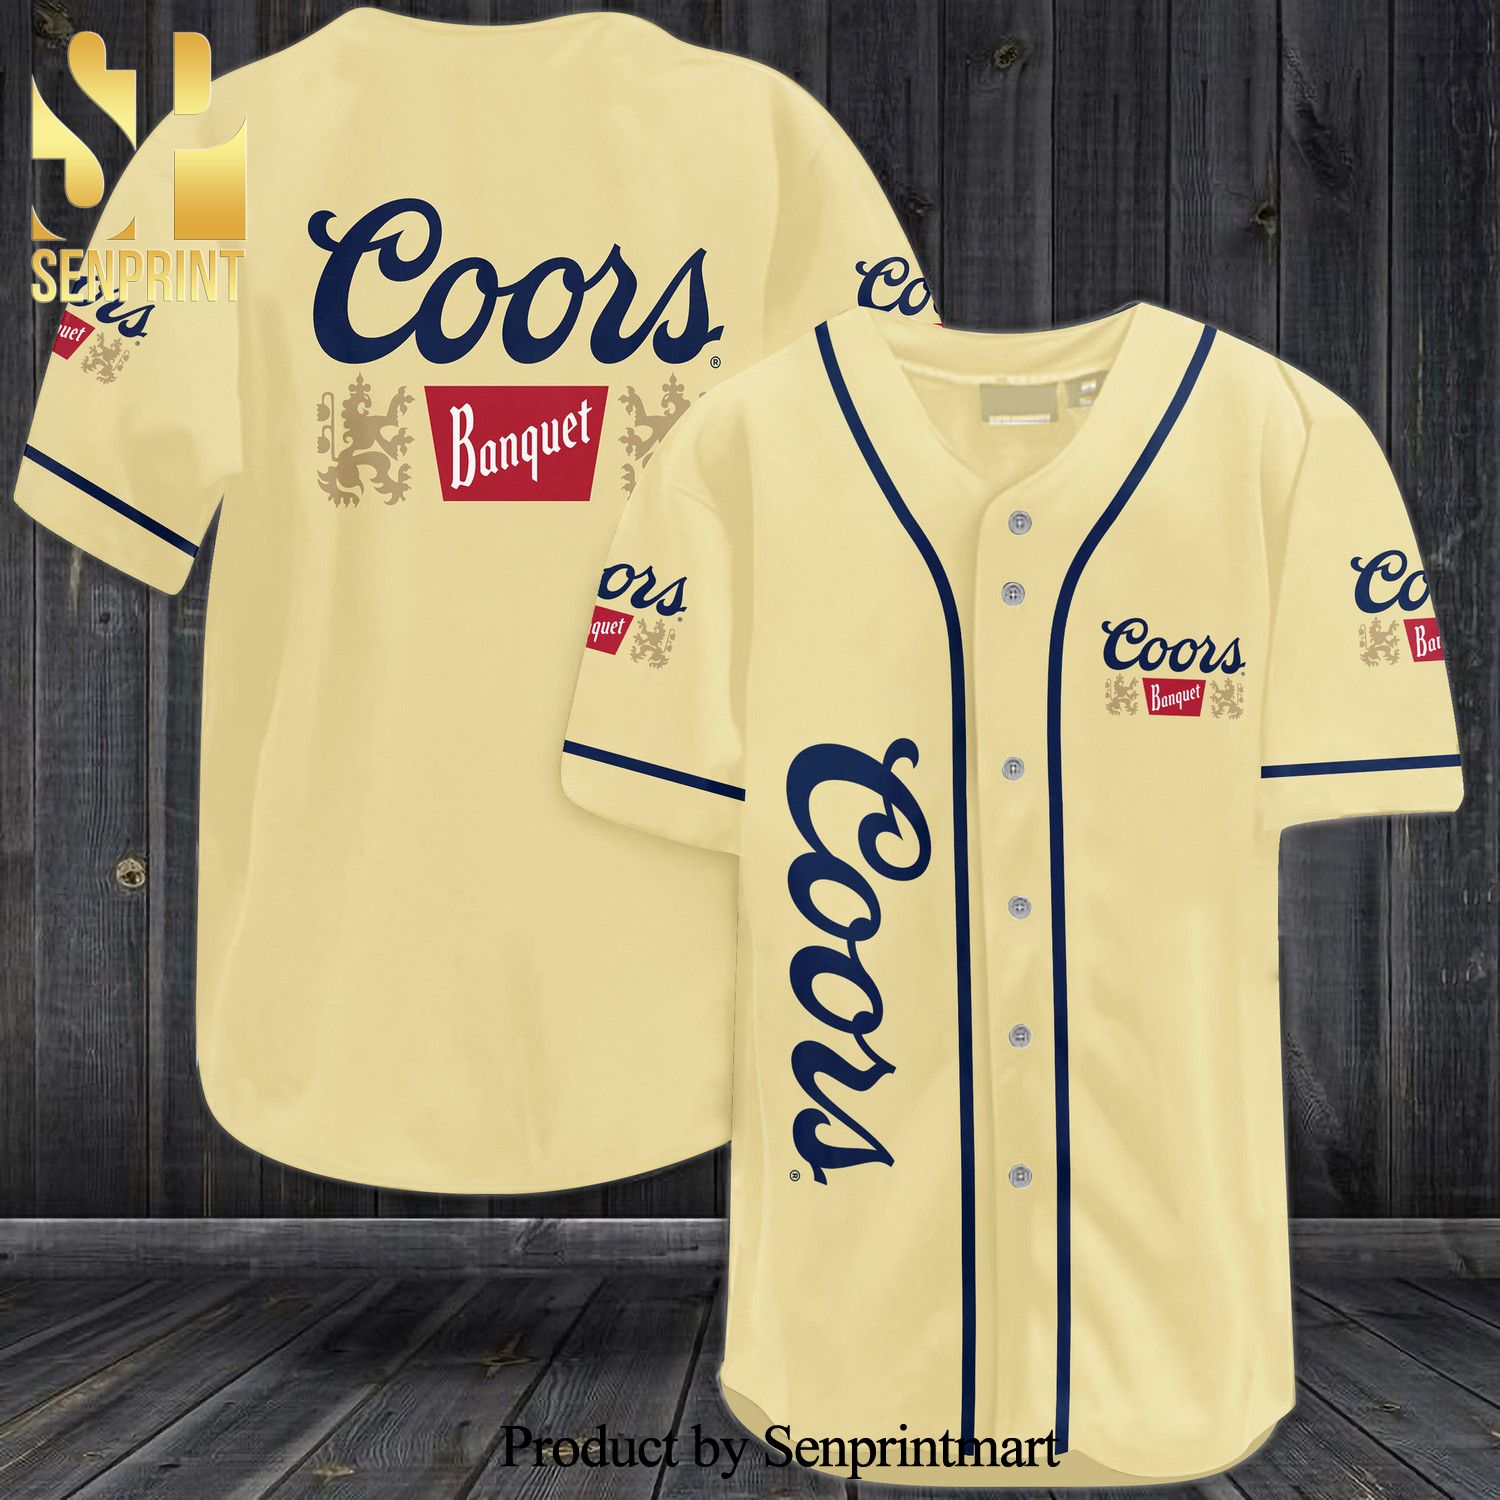 Coors Banquet All Over Print Baseball Jersey – Beige